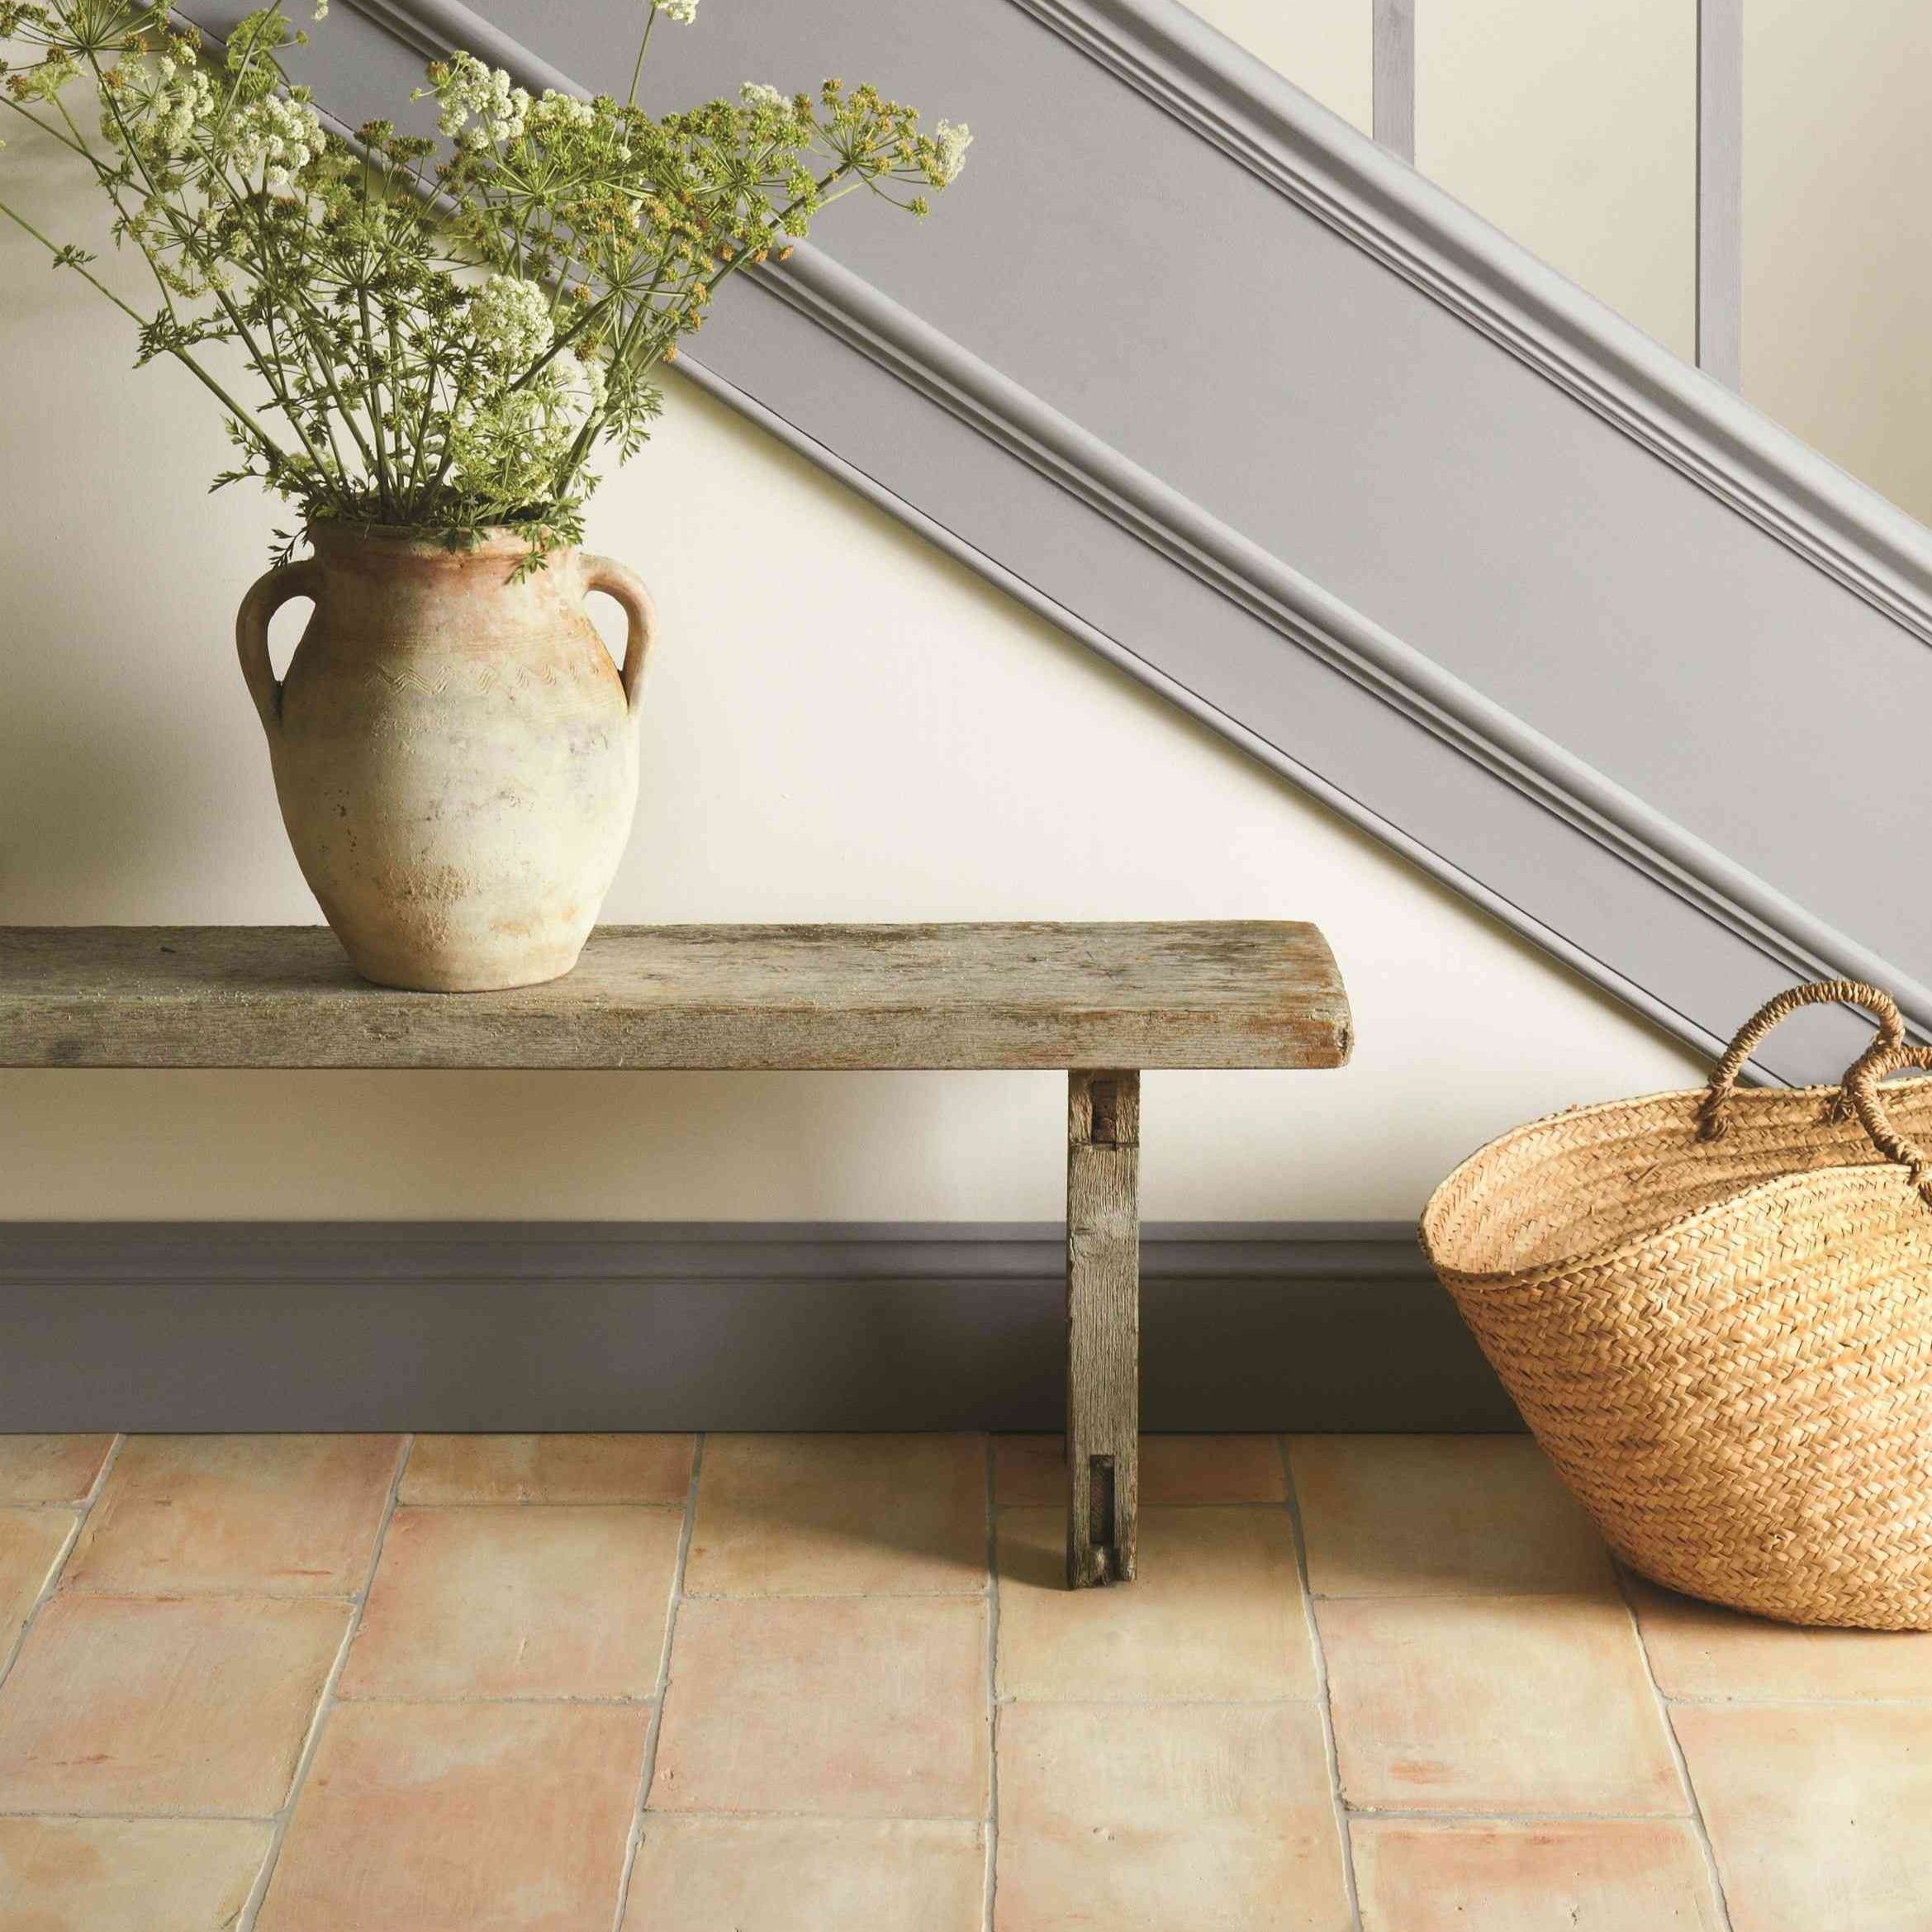 Original Style Earthworks Handmade Terracotta Floor Tile 22x36cm